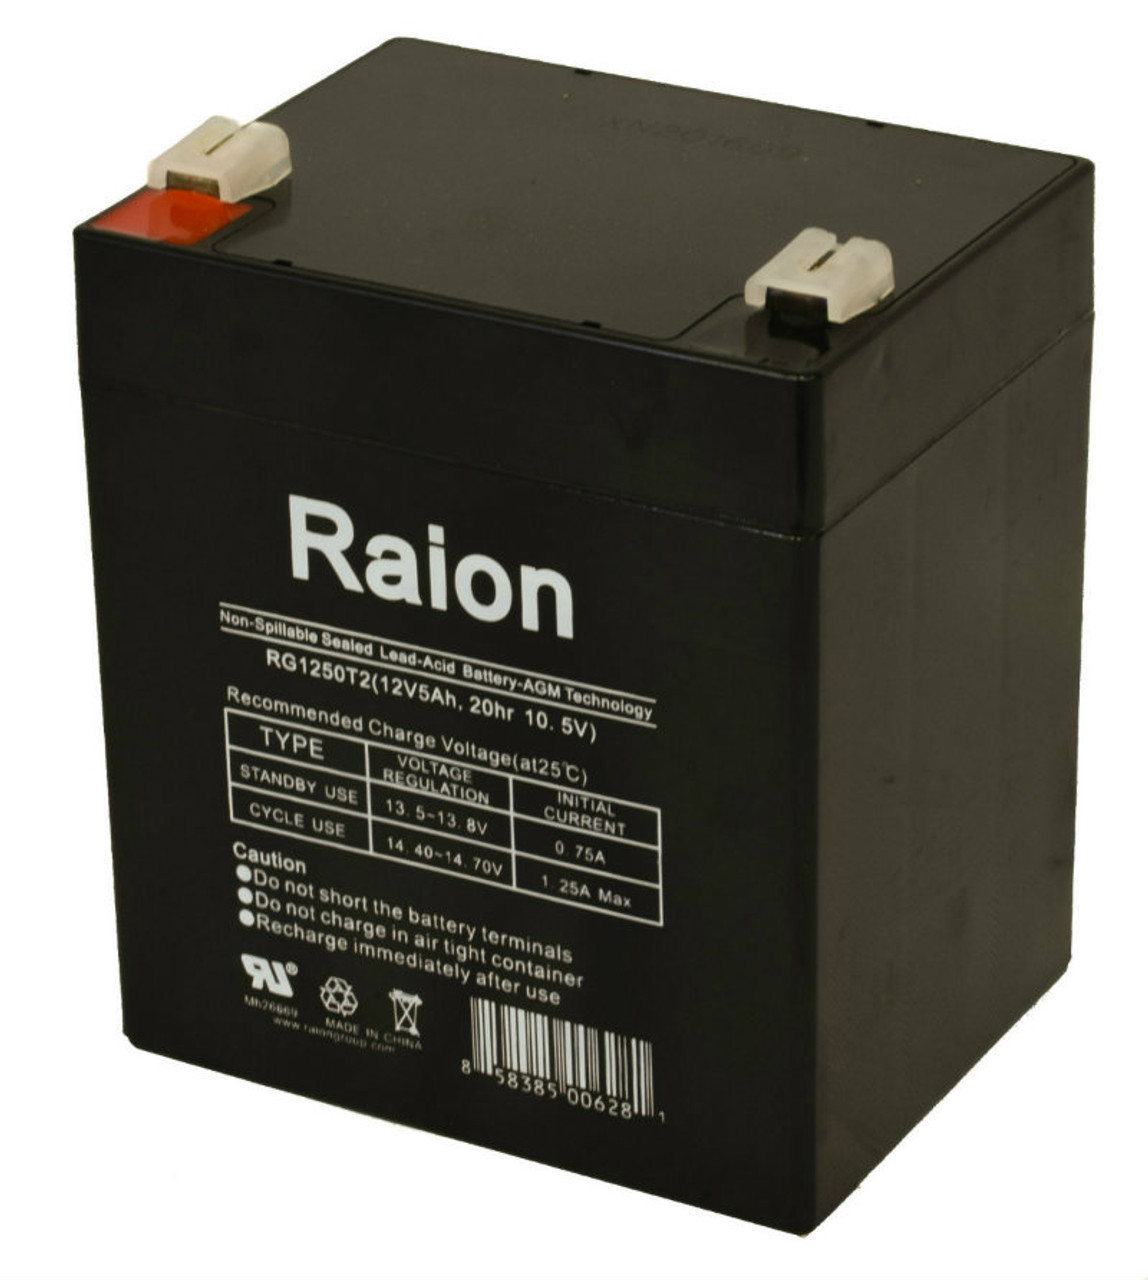 Raion Power RG1250T1 Replacement Emergency Light Battery for Emergi-Lite 12V5